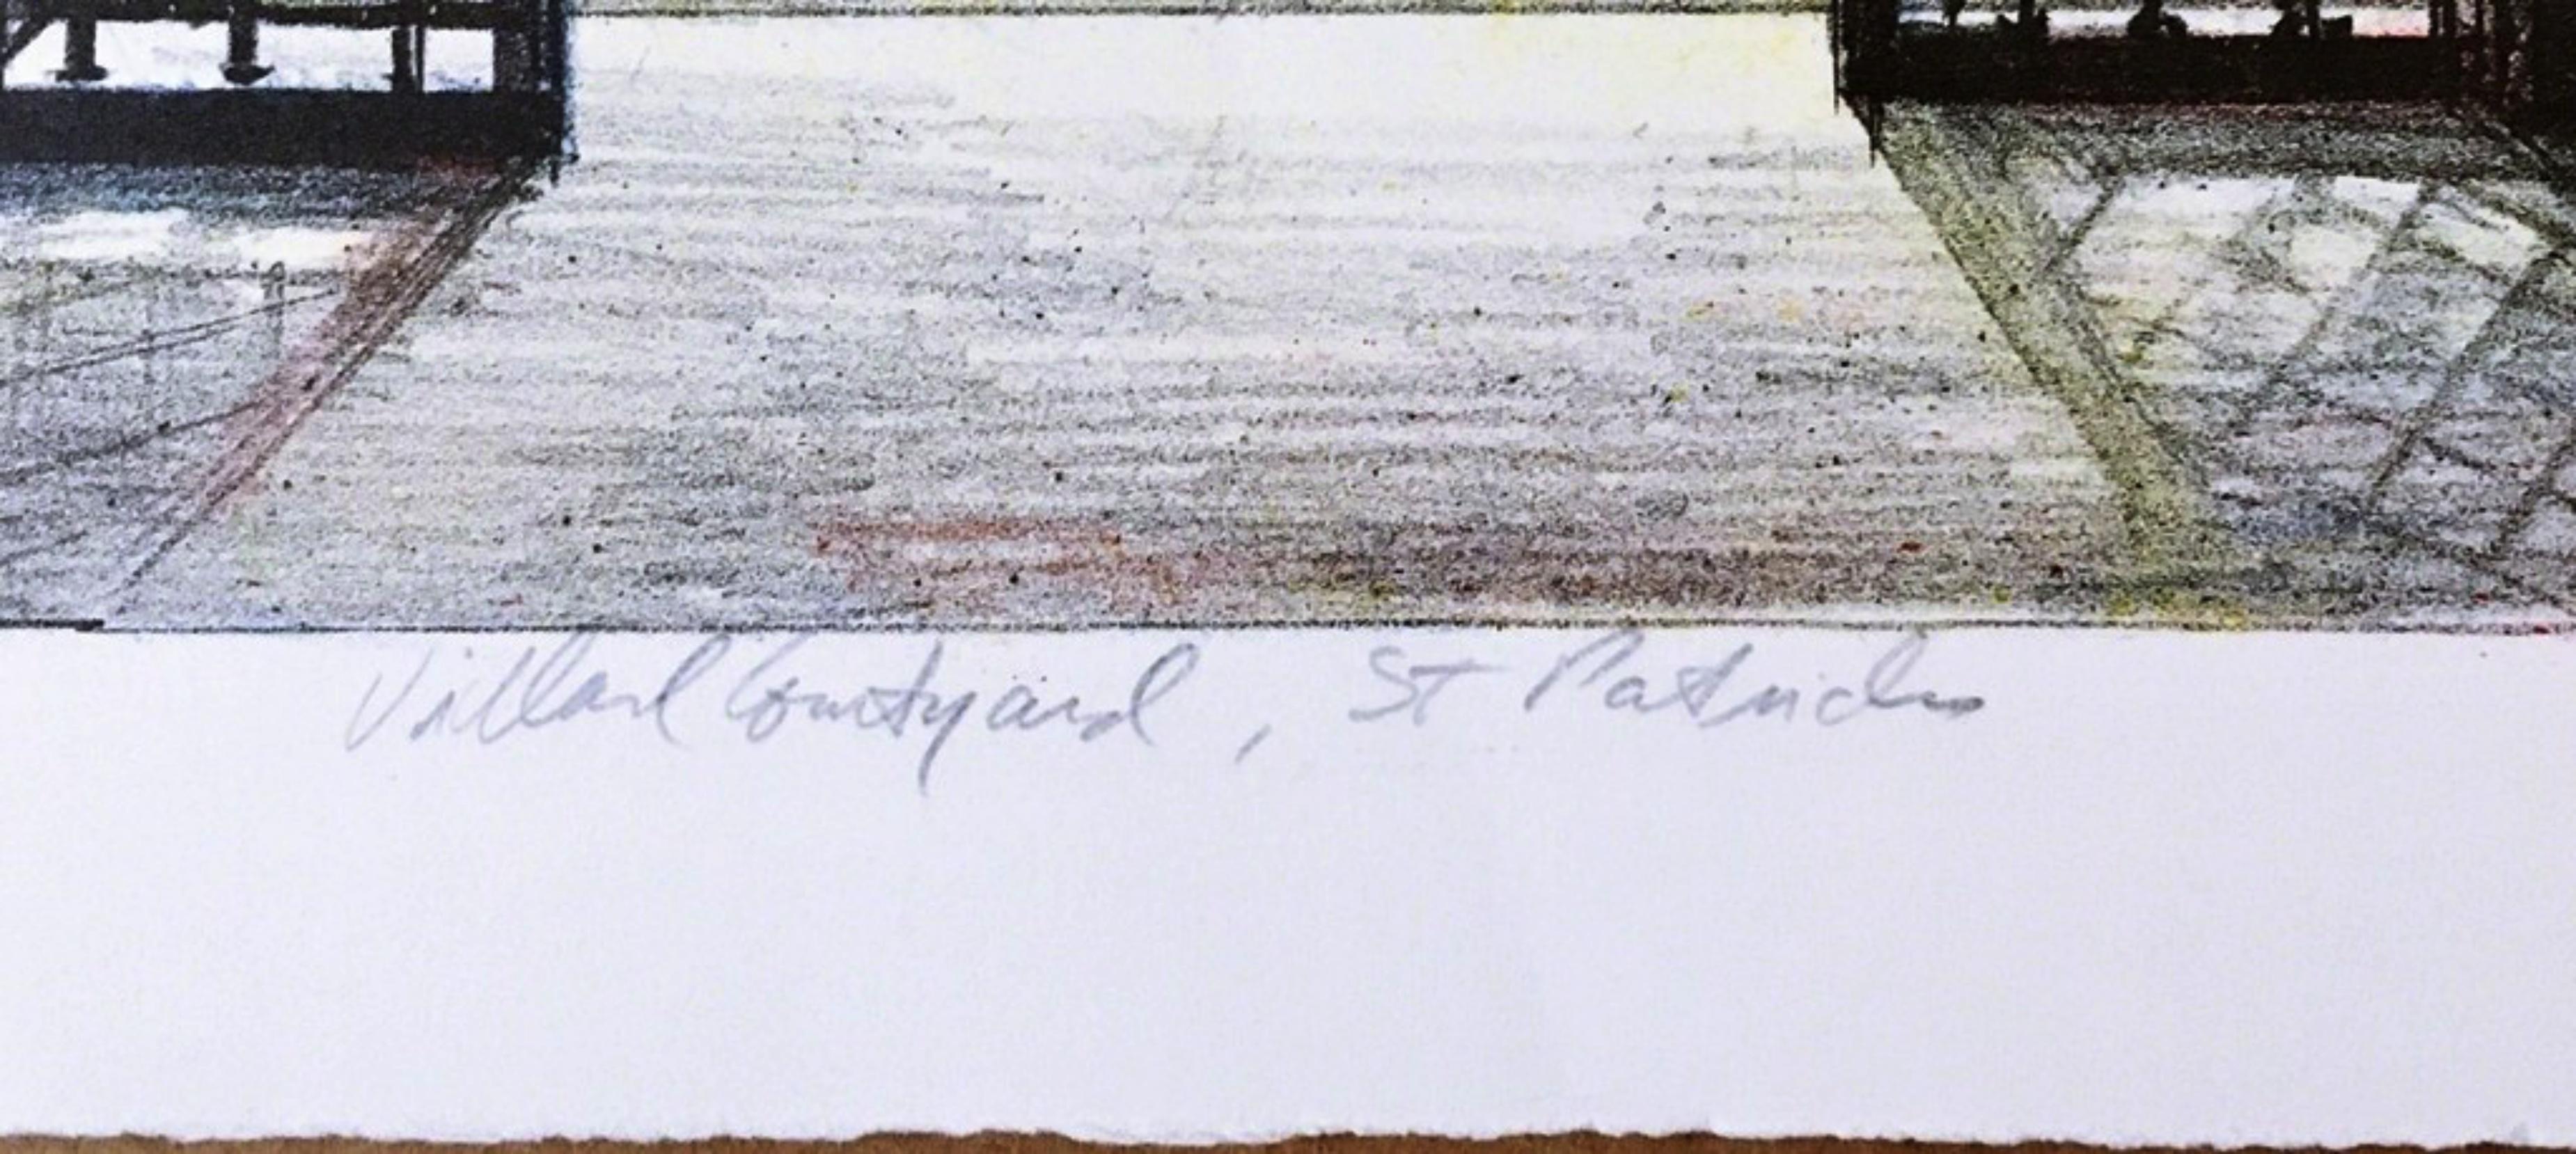 Richard Haas
Cour Villard, cathédrale Saint-Patrick, New York, 1983
Lithographie couleur
29 1/2 × 41 1/2 pouces
Edition 23/50
Signée à la main, numérotée et datée avec le cachet de l'éditeur en bas à gauche sur le devant.

Cette lithographie